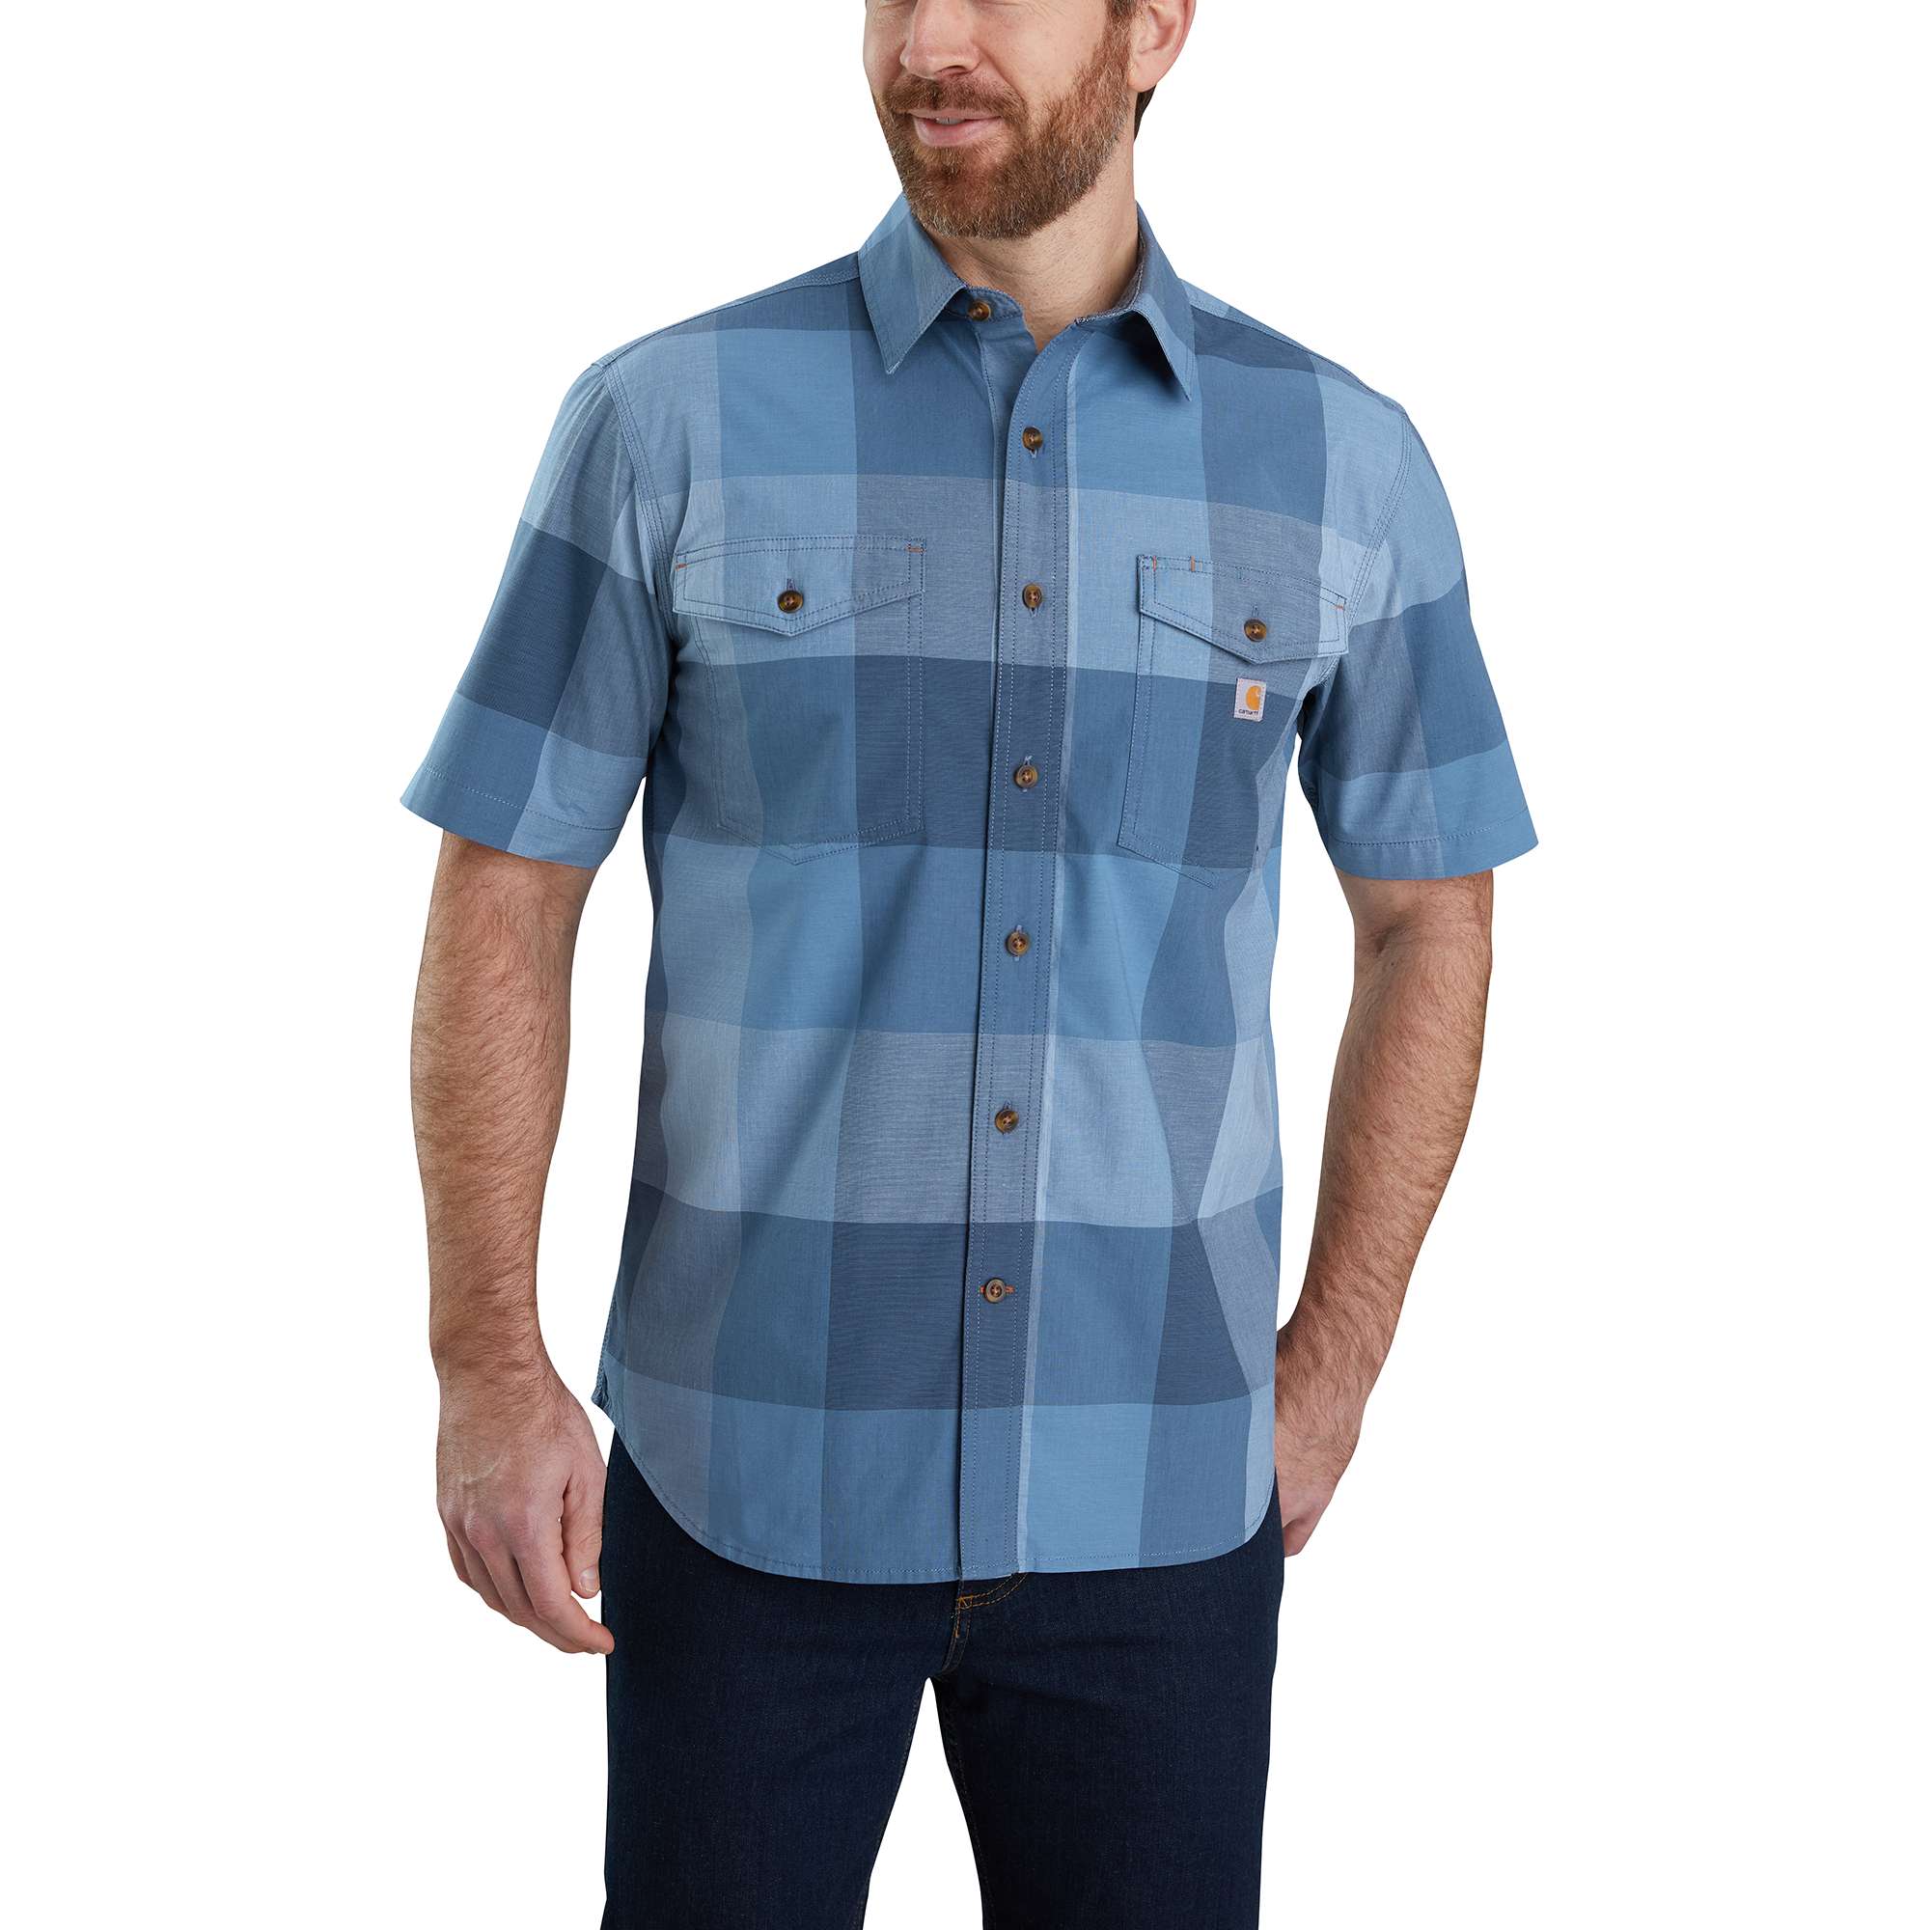 Men's Button Down Work Shirts | Carhartt